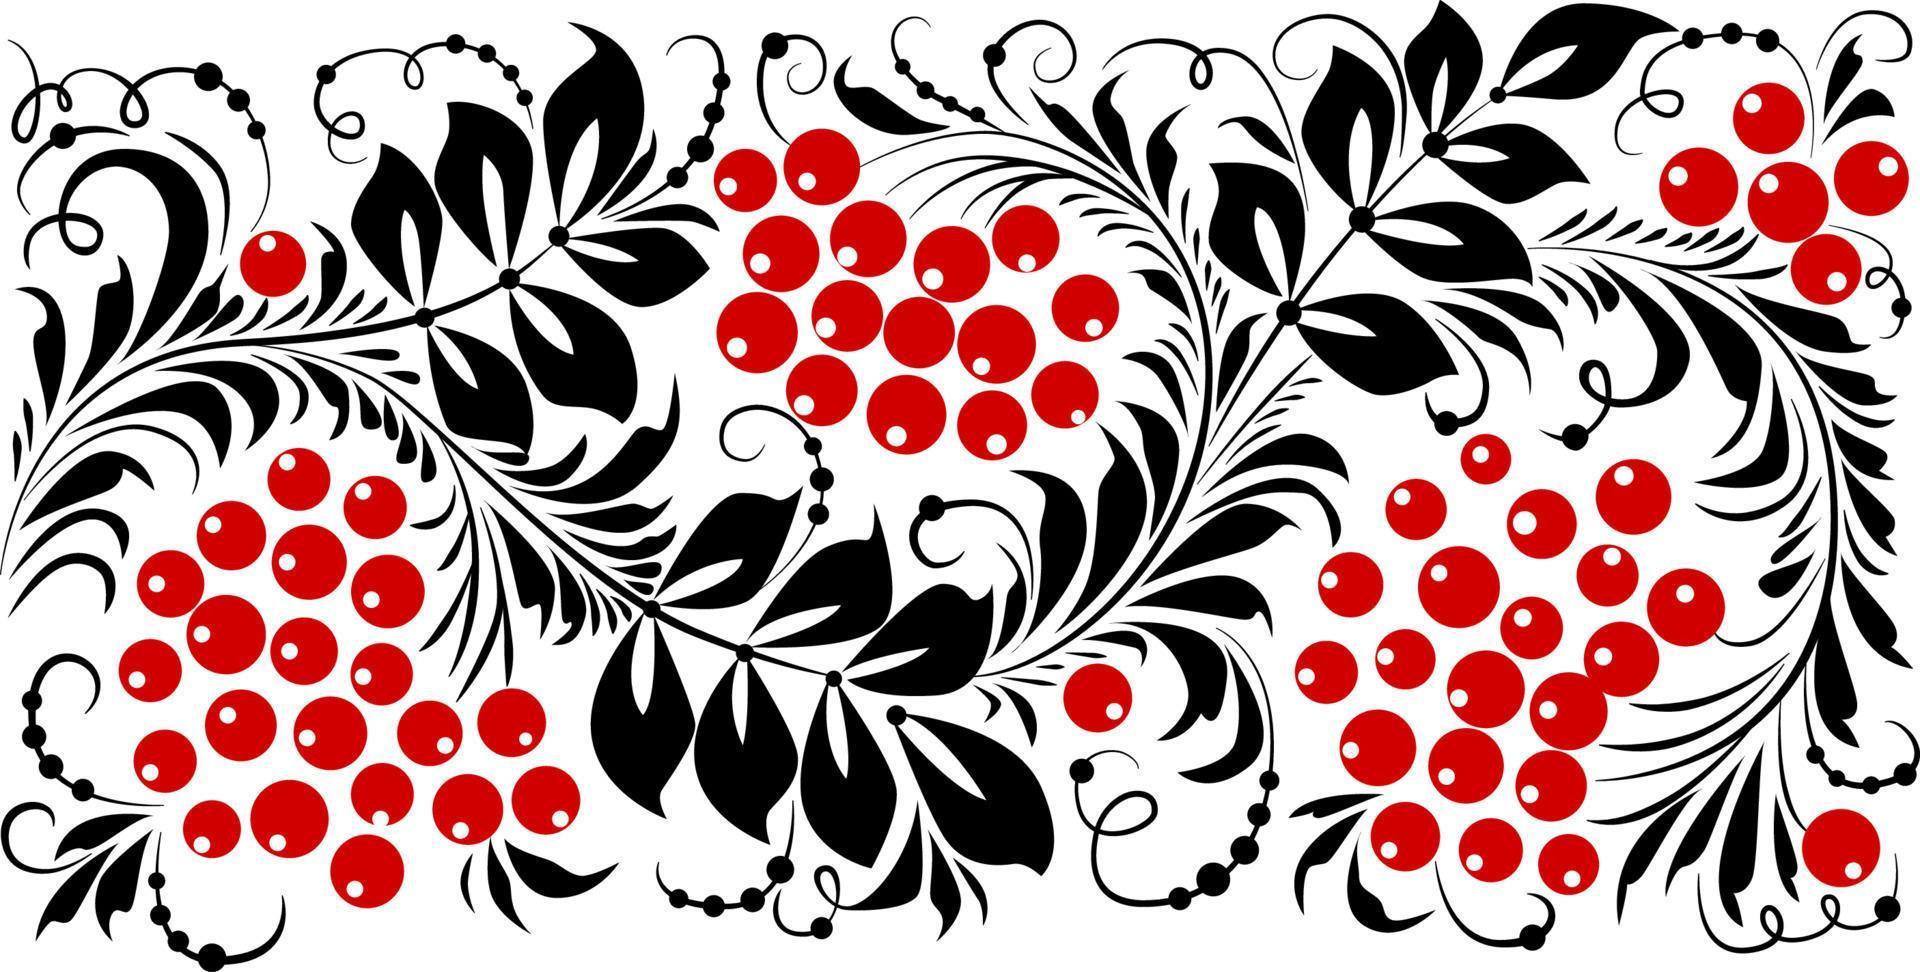 affiche de style ukrainien basée sur la broderie folklorique ukrainienne en rouge et noir sur fond blanc. petrykivka. illustration vectorielle vecteur